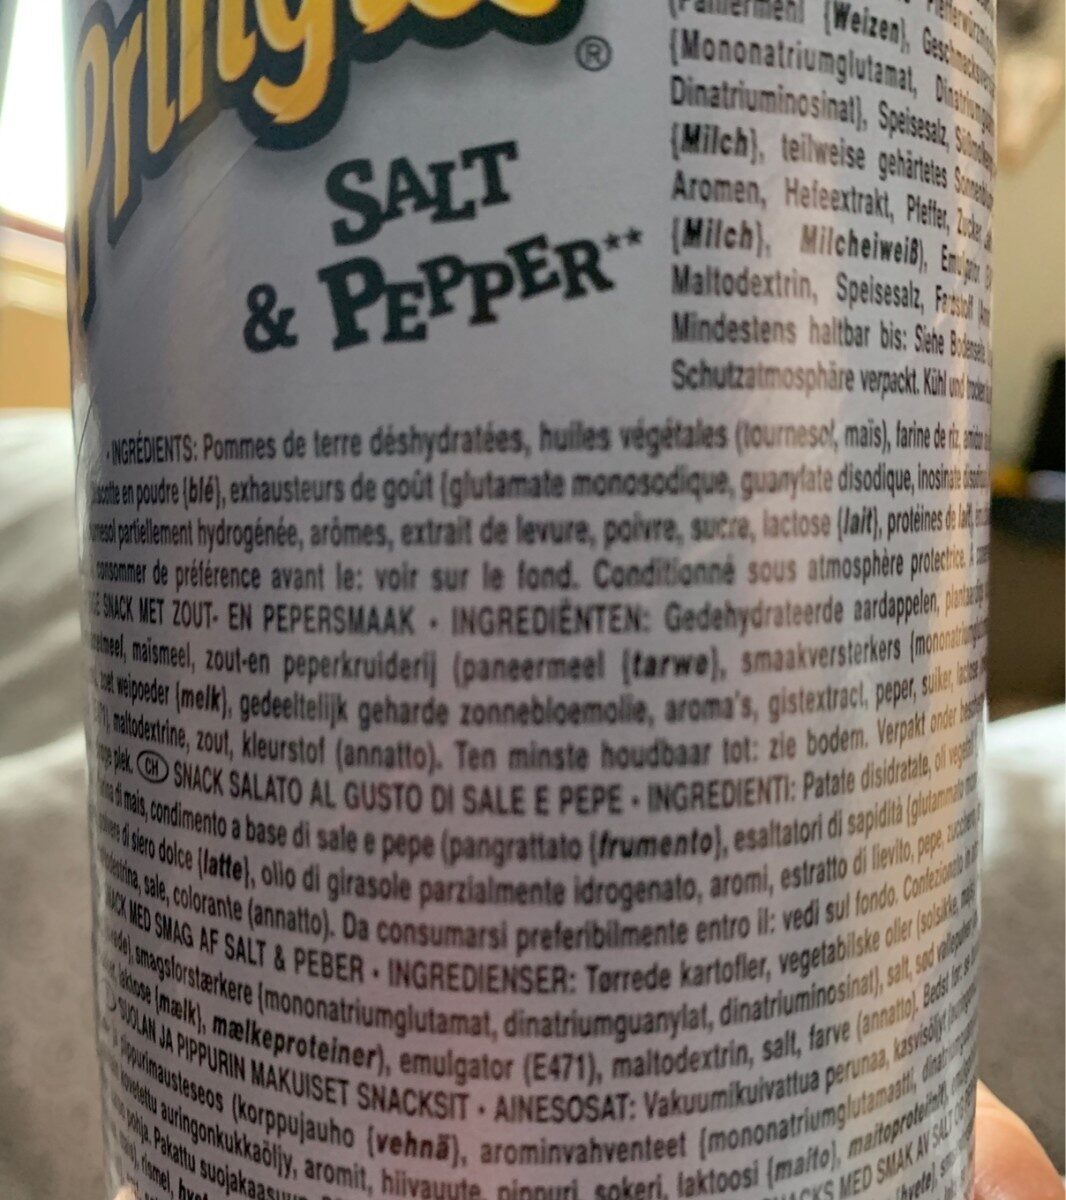 Salt & Pepper - Ingrédients